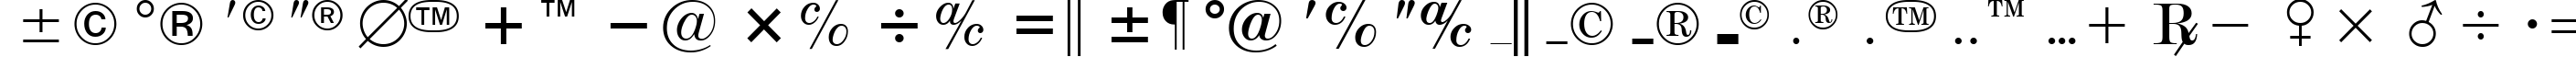 Пример написания английского алфавита шрифтом Commercial Pi BT